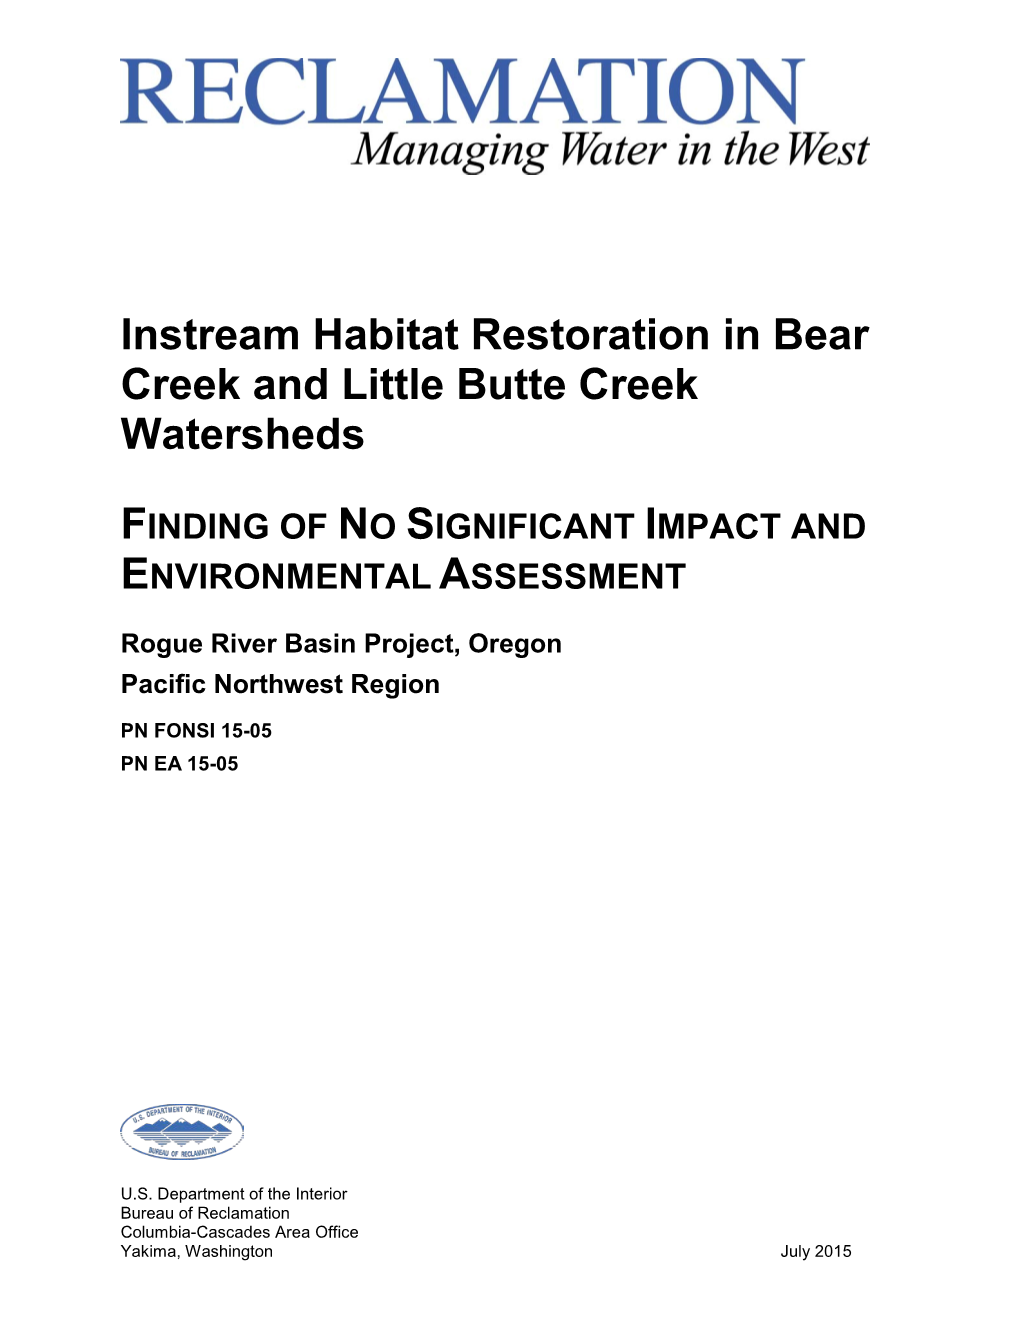 Instream Habitat Restoration in Bear Creek and Little Butte Creek Watersheds